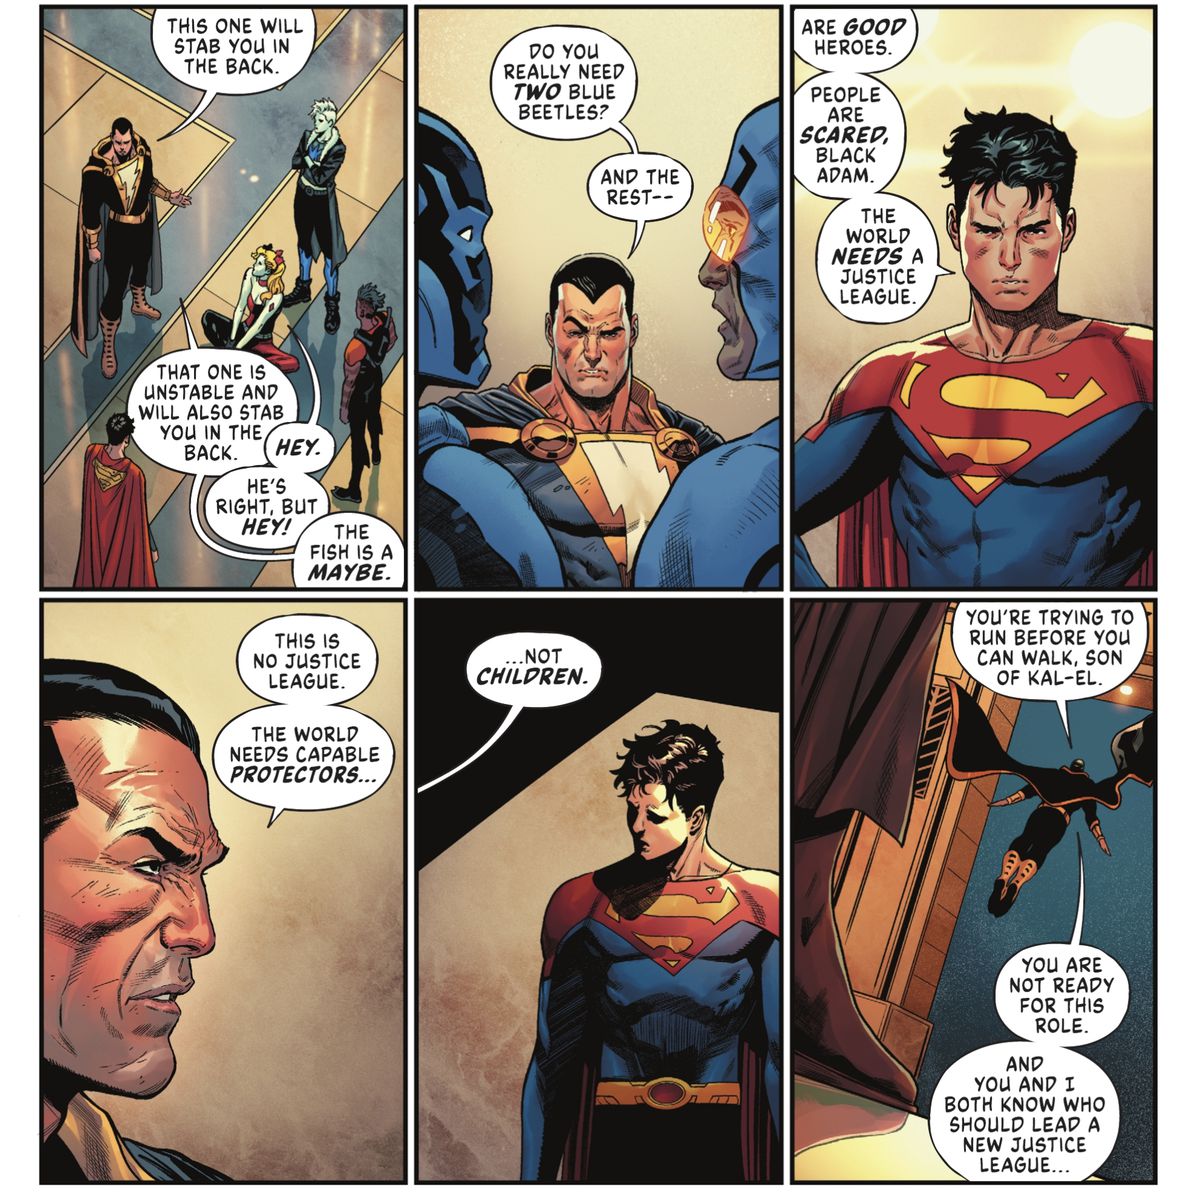 Black Adam veste il campo di Jon Kent/Superman per una nuova formazione della Justice League, dicendo che Harley è instabile e lo pugnalerà alla schiena (Harley dice 